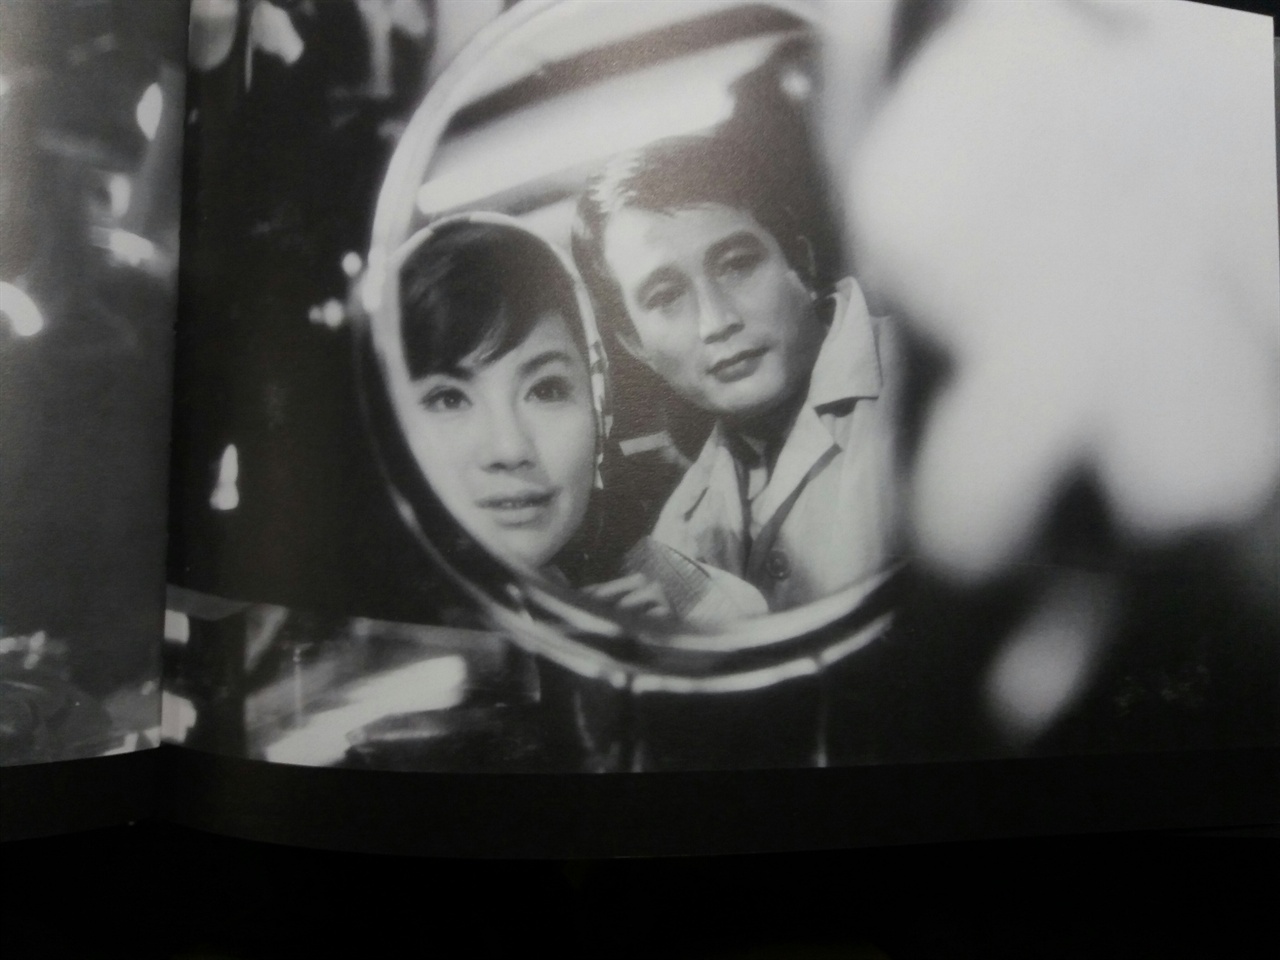  1966년 제작된 영화 <만추>의 스틸 컷. 신성일 추모에디션 <사라진 영화, 만추>에는 영화제작 당시 스틸 컷 200장이 수록돼 있다.